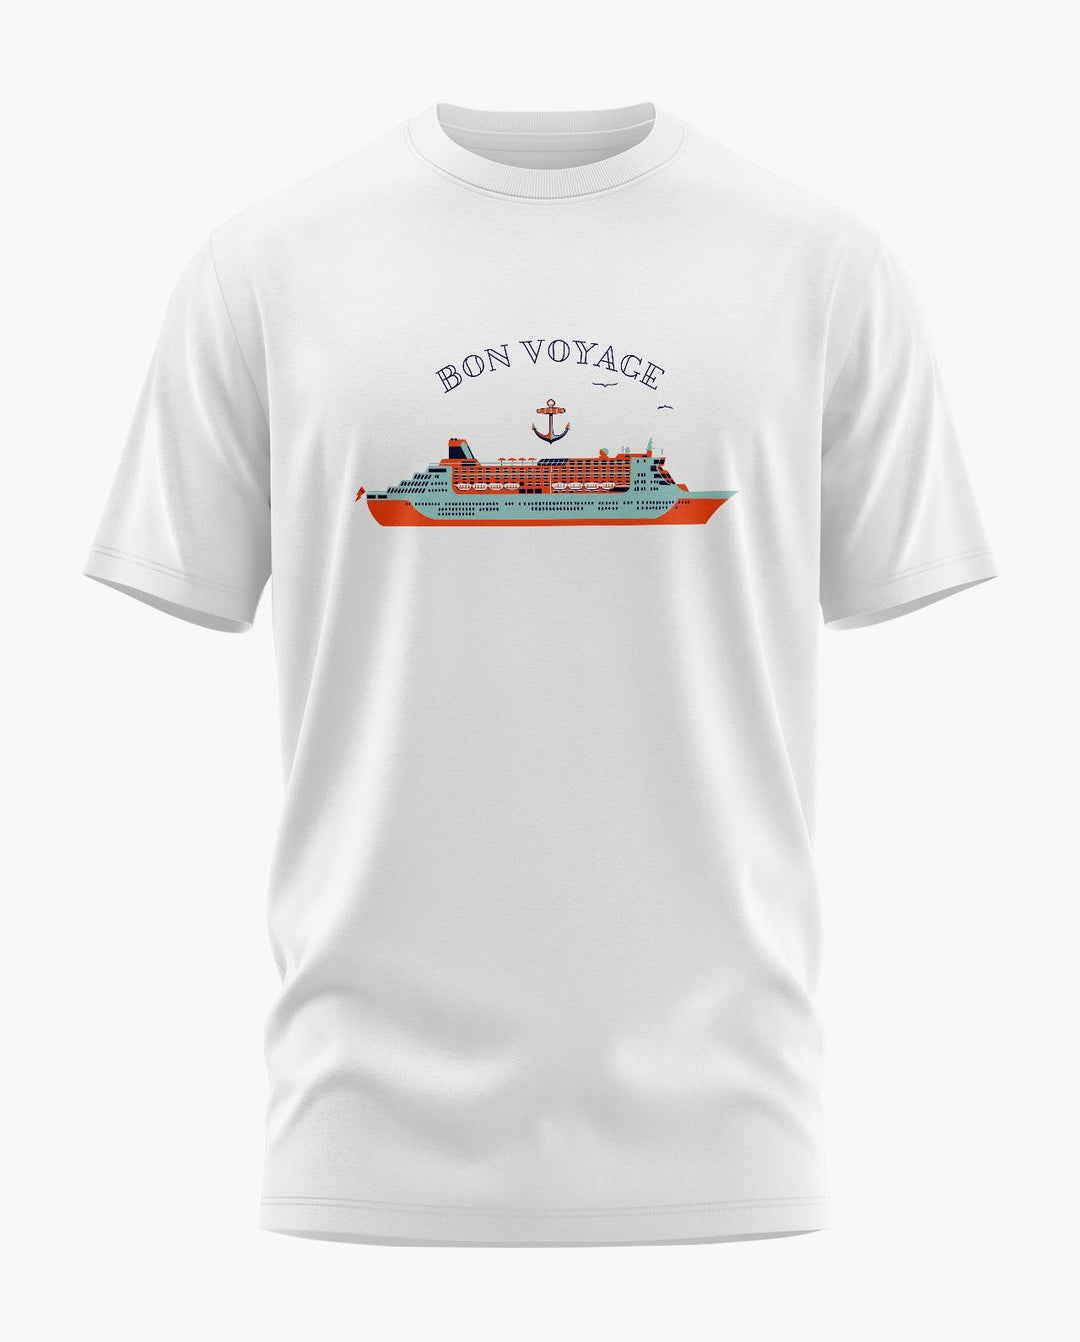 Bon Voyage T-Shirt - Aero Armour